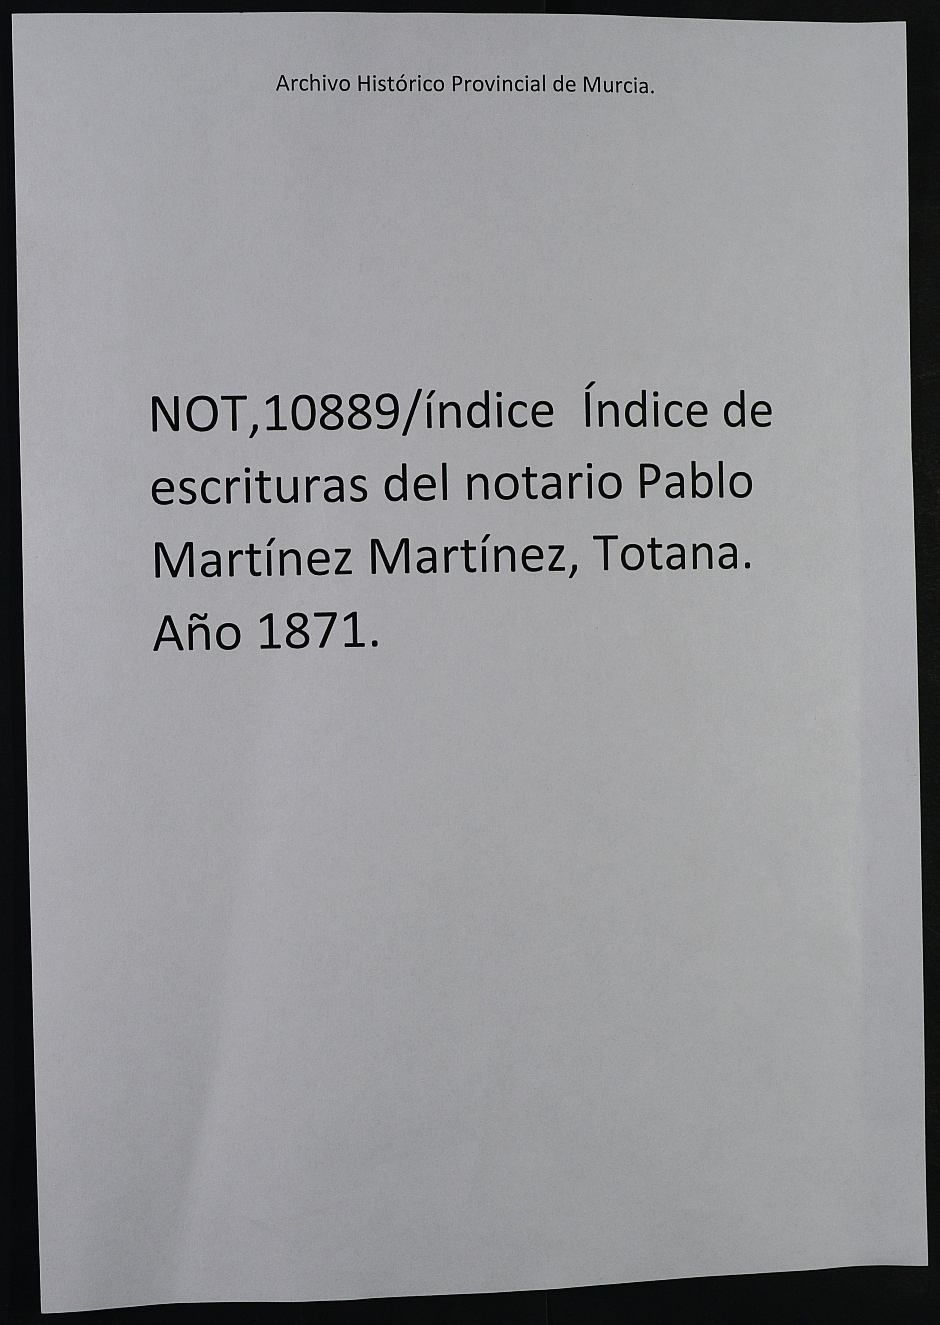 Registro de Wenceslao Miralles García, Totana, de 1871.